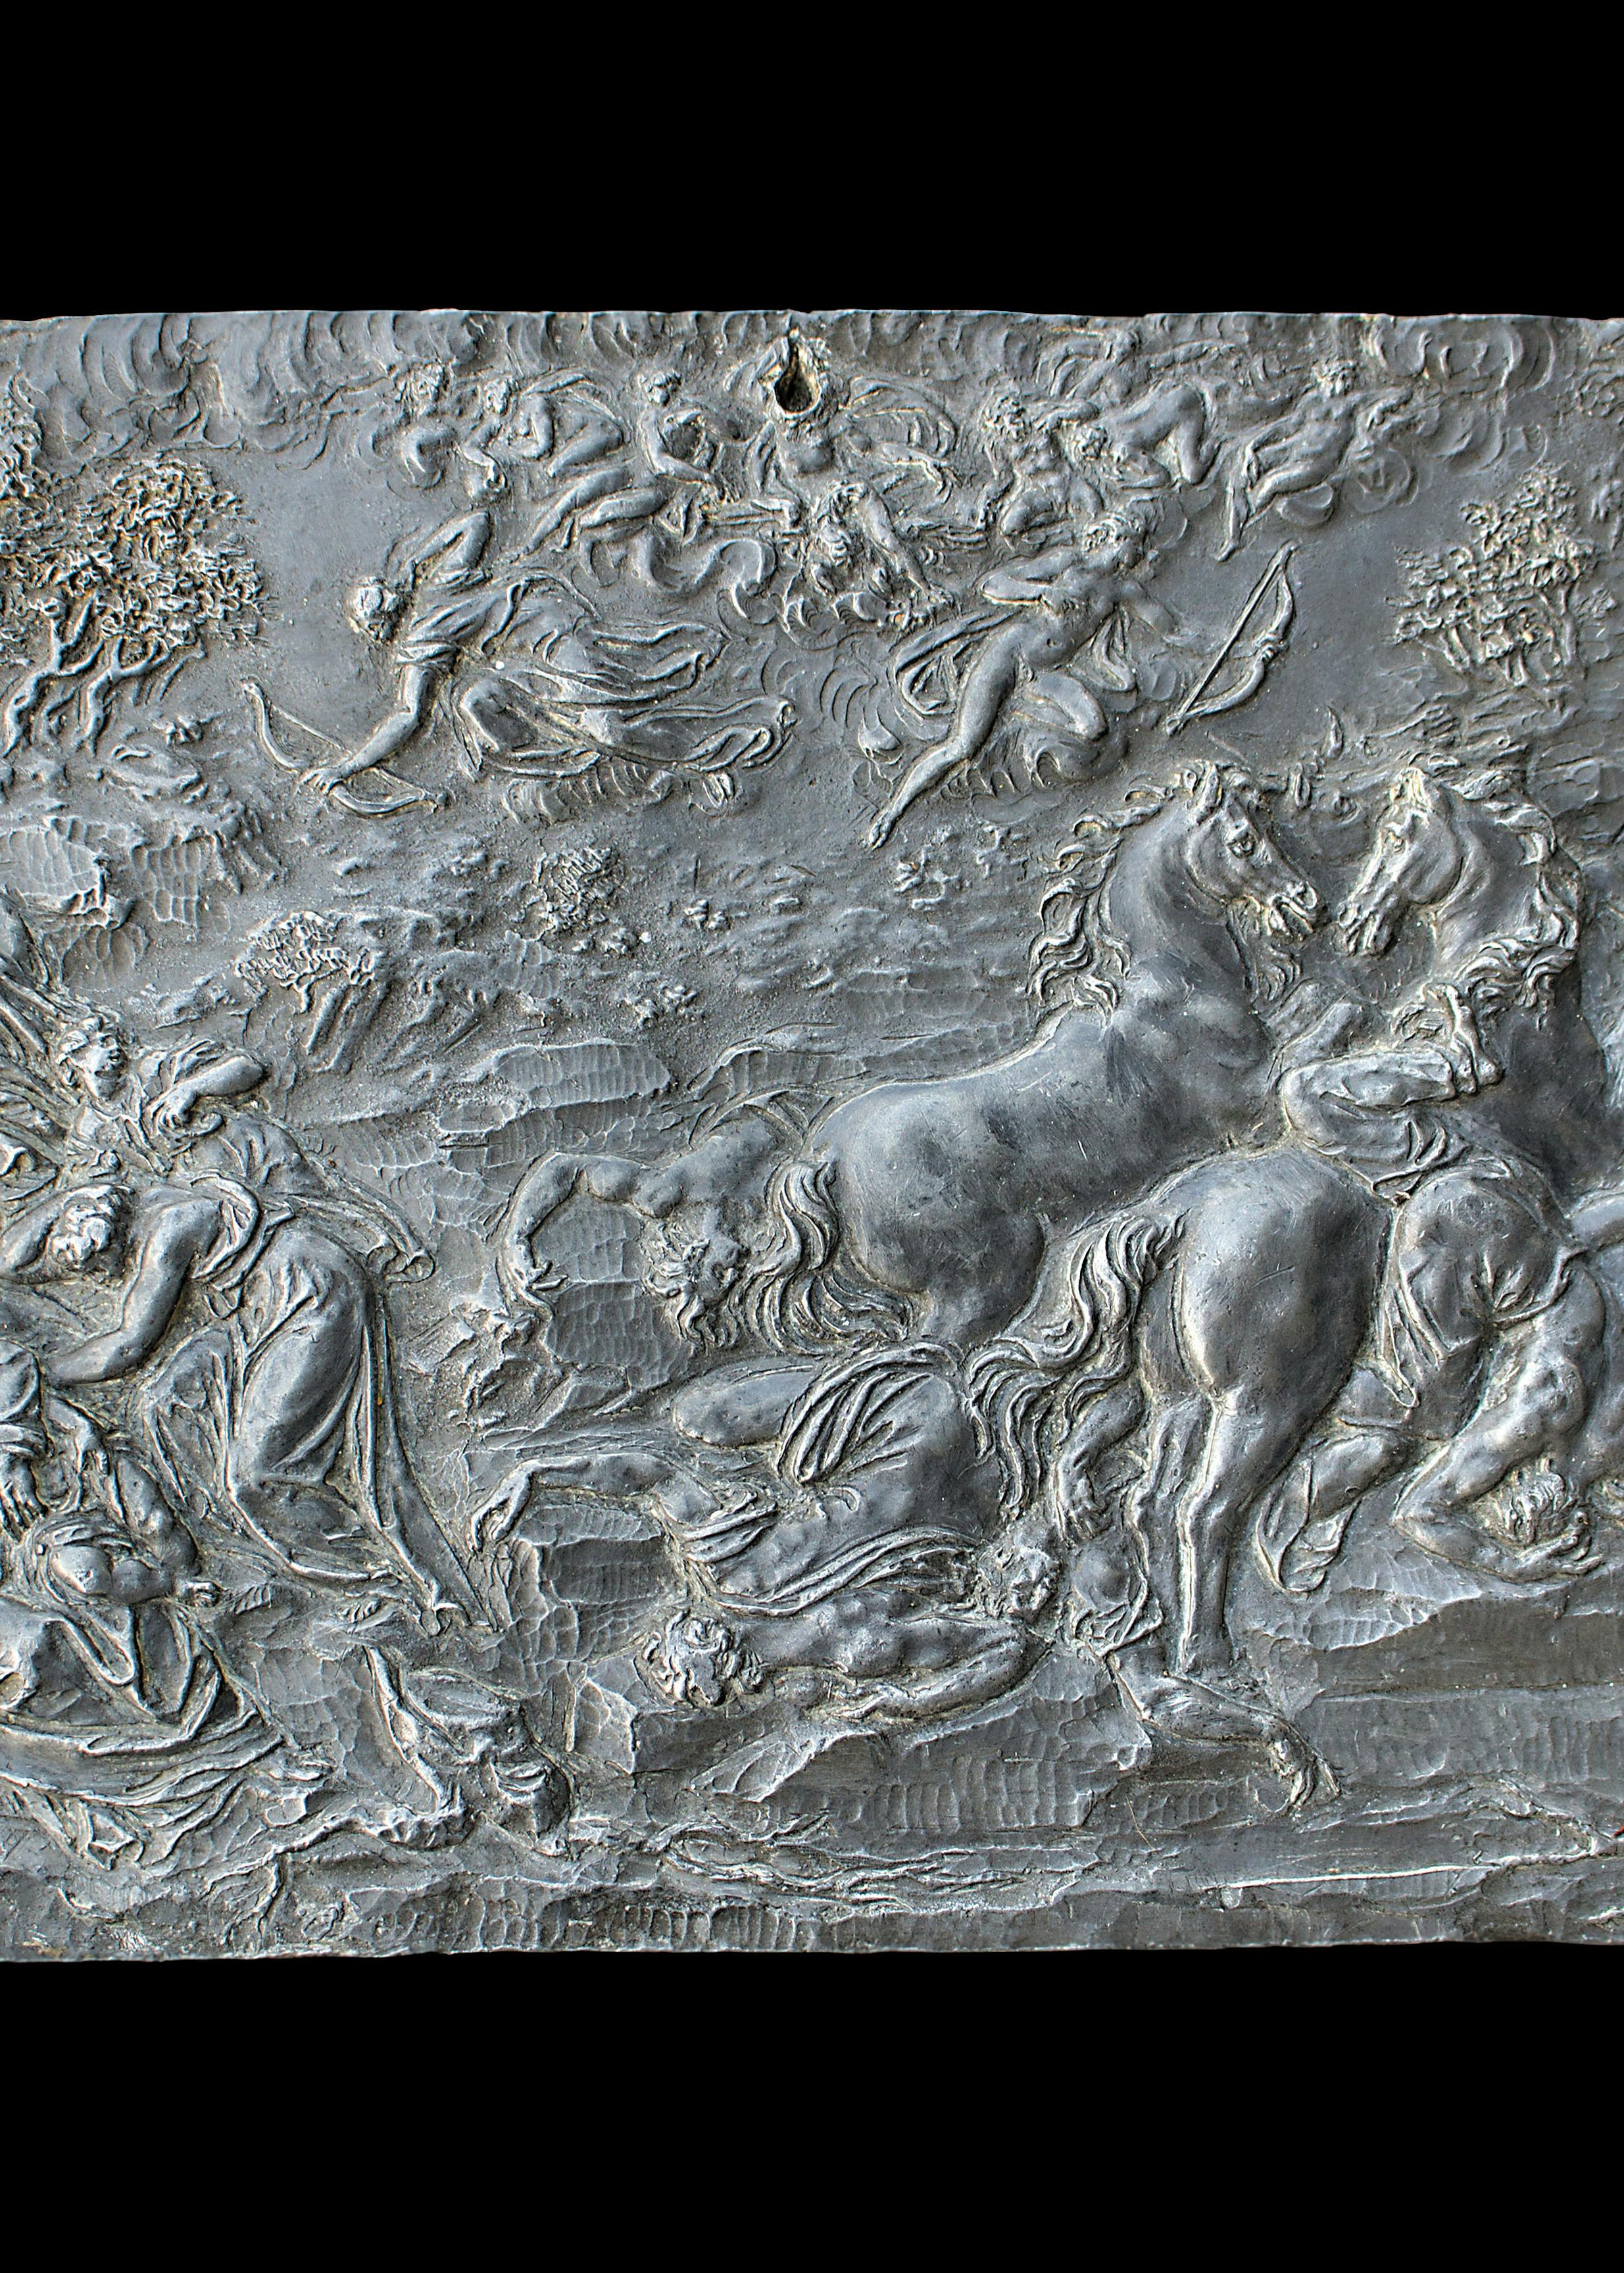 Scena di battaglia con figure umane, cavalli, alberi ed elementi architettonici